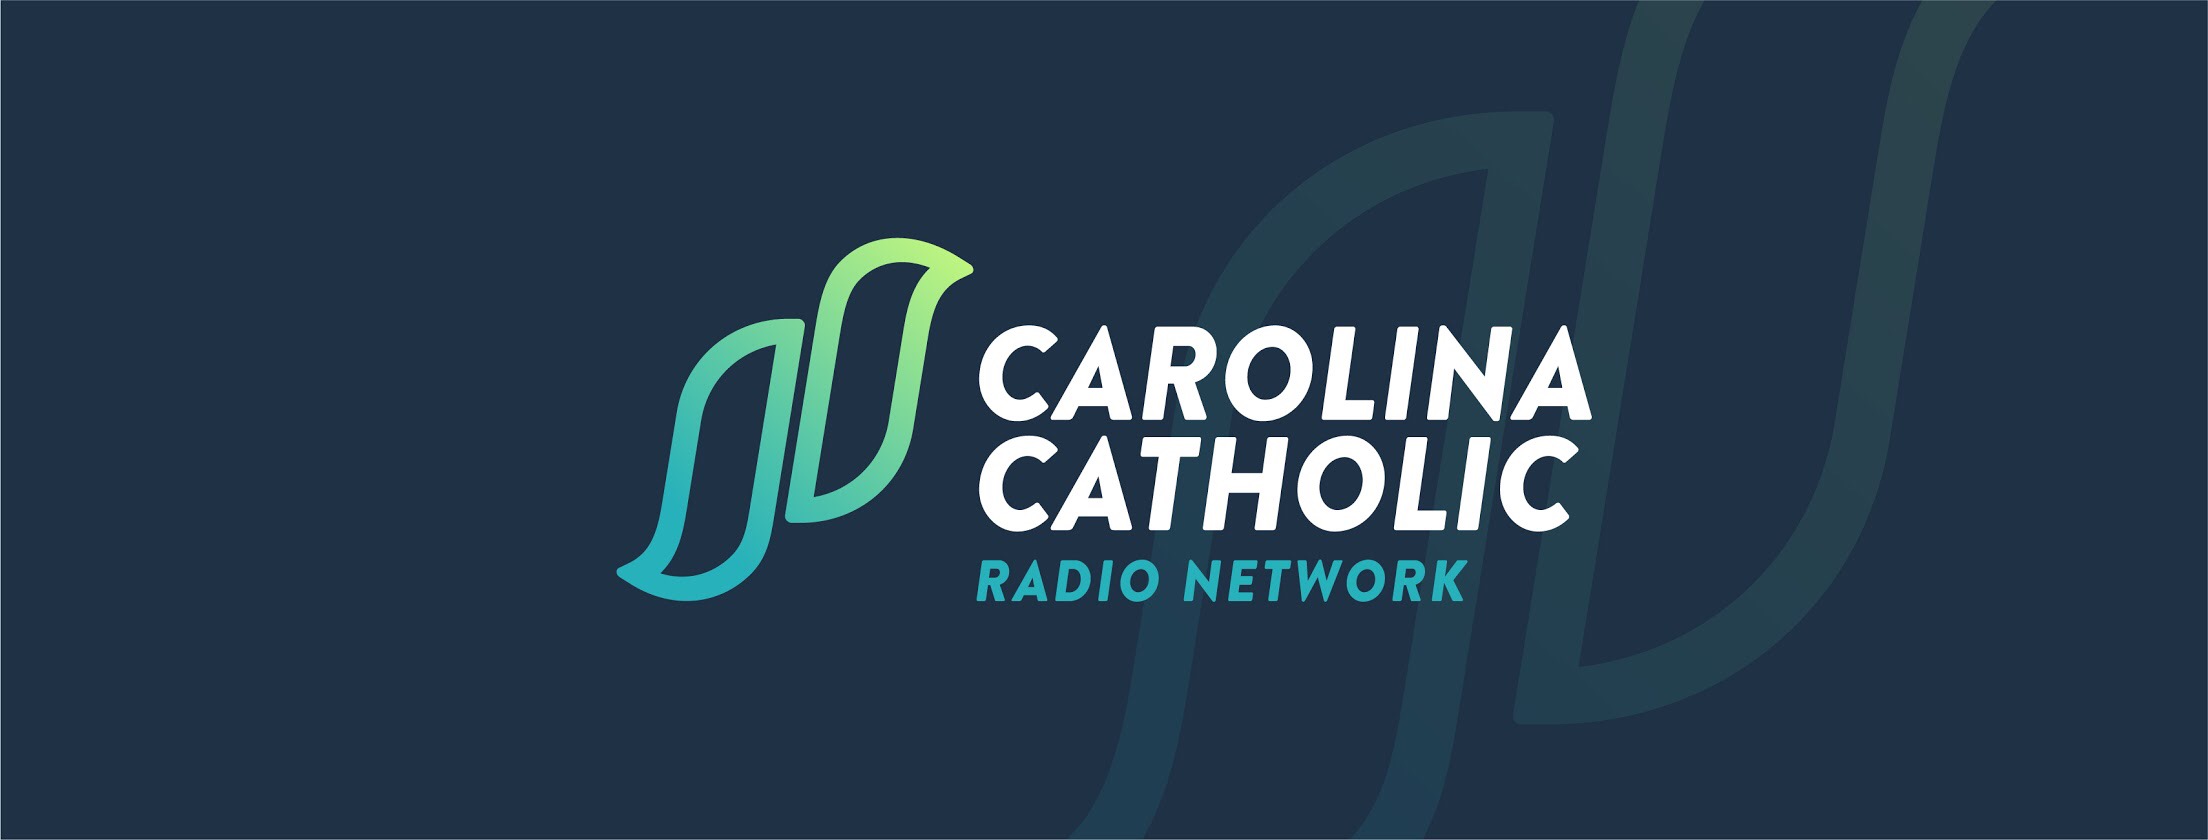 Carolina Catholic Radio Network logo